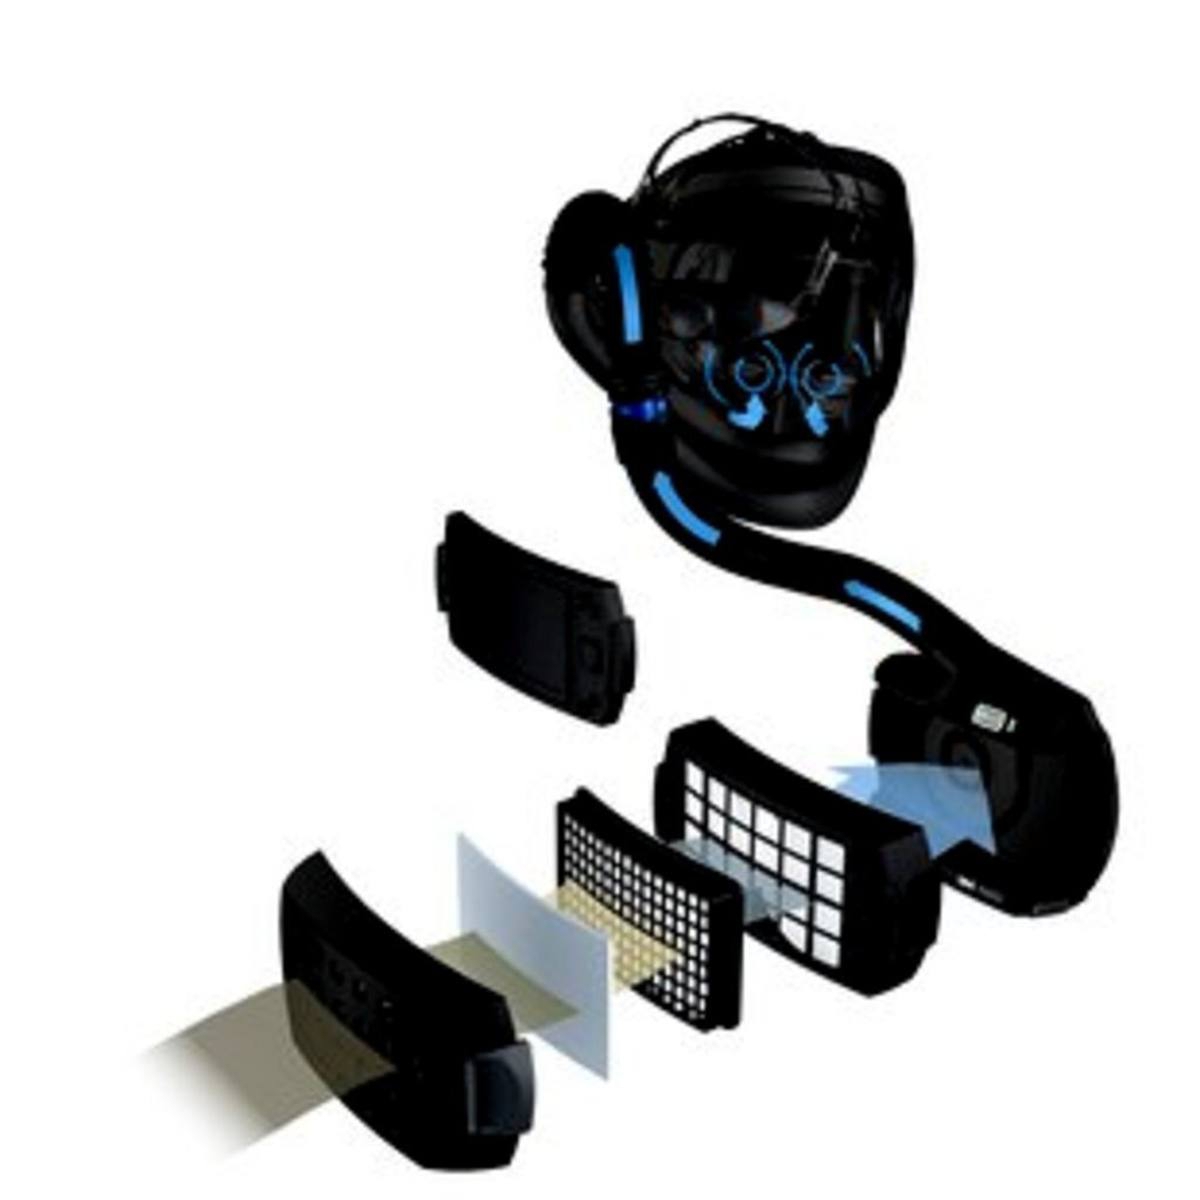 3M Speedglas Versaflo Premium-Leichthaube S655 Starterpaket, inkl. Kopfhalterung Halsabdichtung mit Adflo Gebläse-Atemschutz mit Luftschlauch QRS, Adapter, Luftmengenmesser, Vorfilter, Funkensperre, Partikelfilter, Lithium-Ionen-Akku und Ladegerät